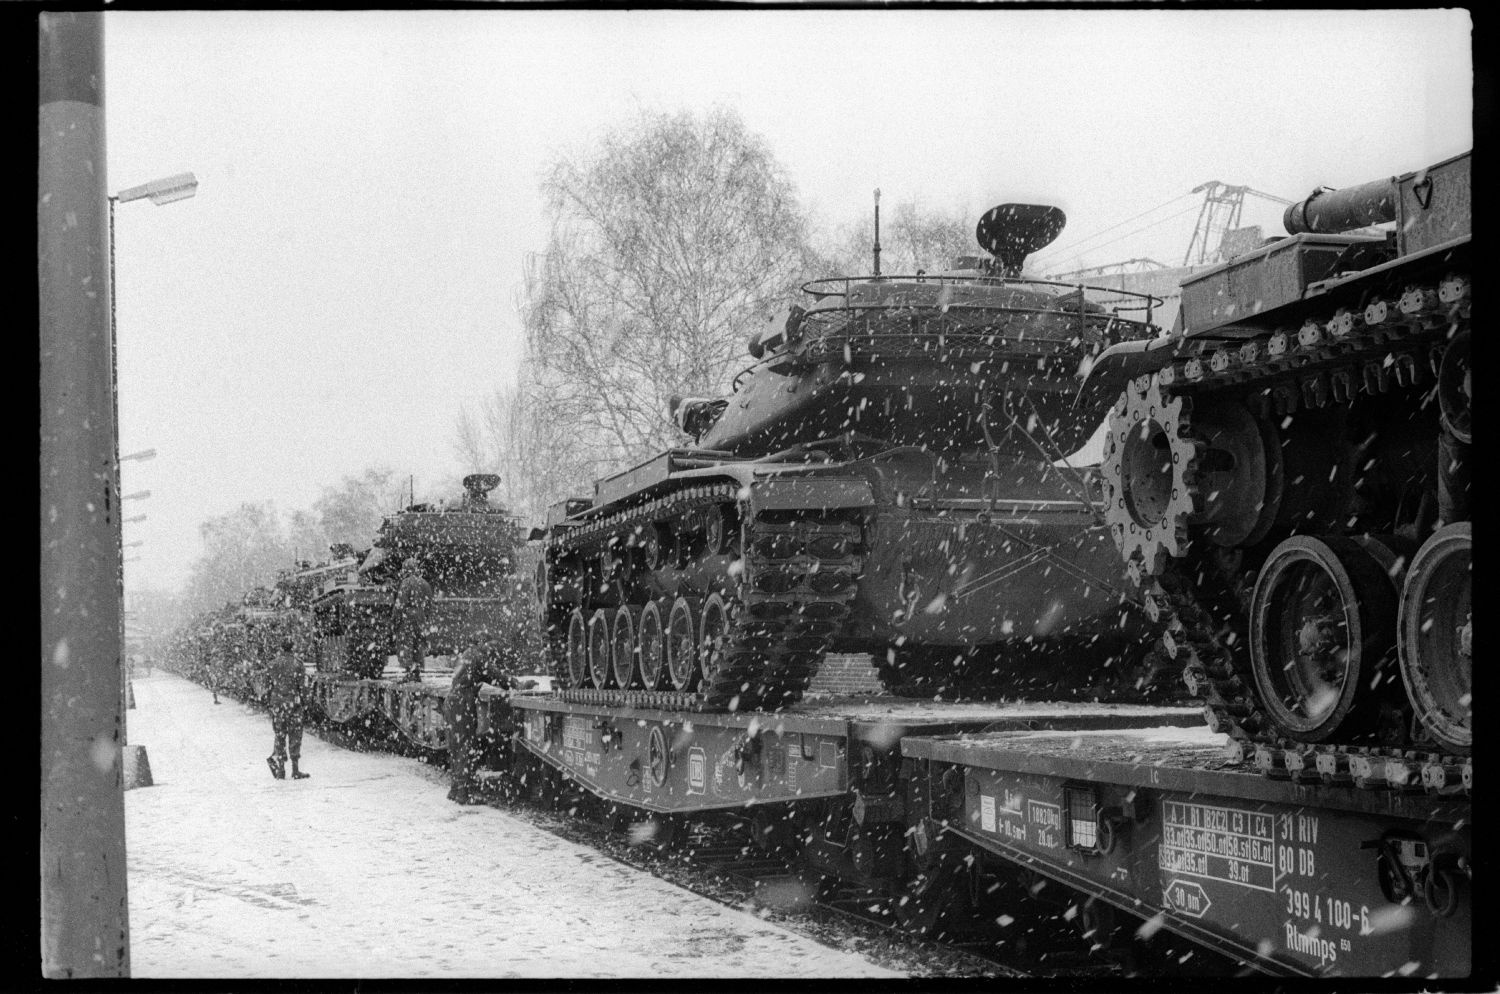 S/w-Fotografie: Verladung von Kampfpanzern der U.S. Army Berlin Brigade am Bahnhof Lichterfelde-West